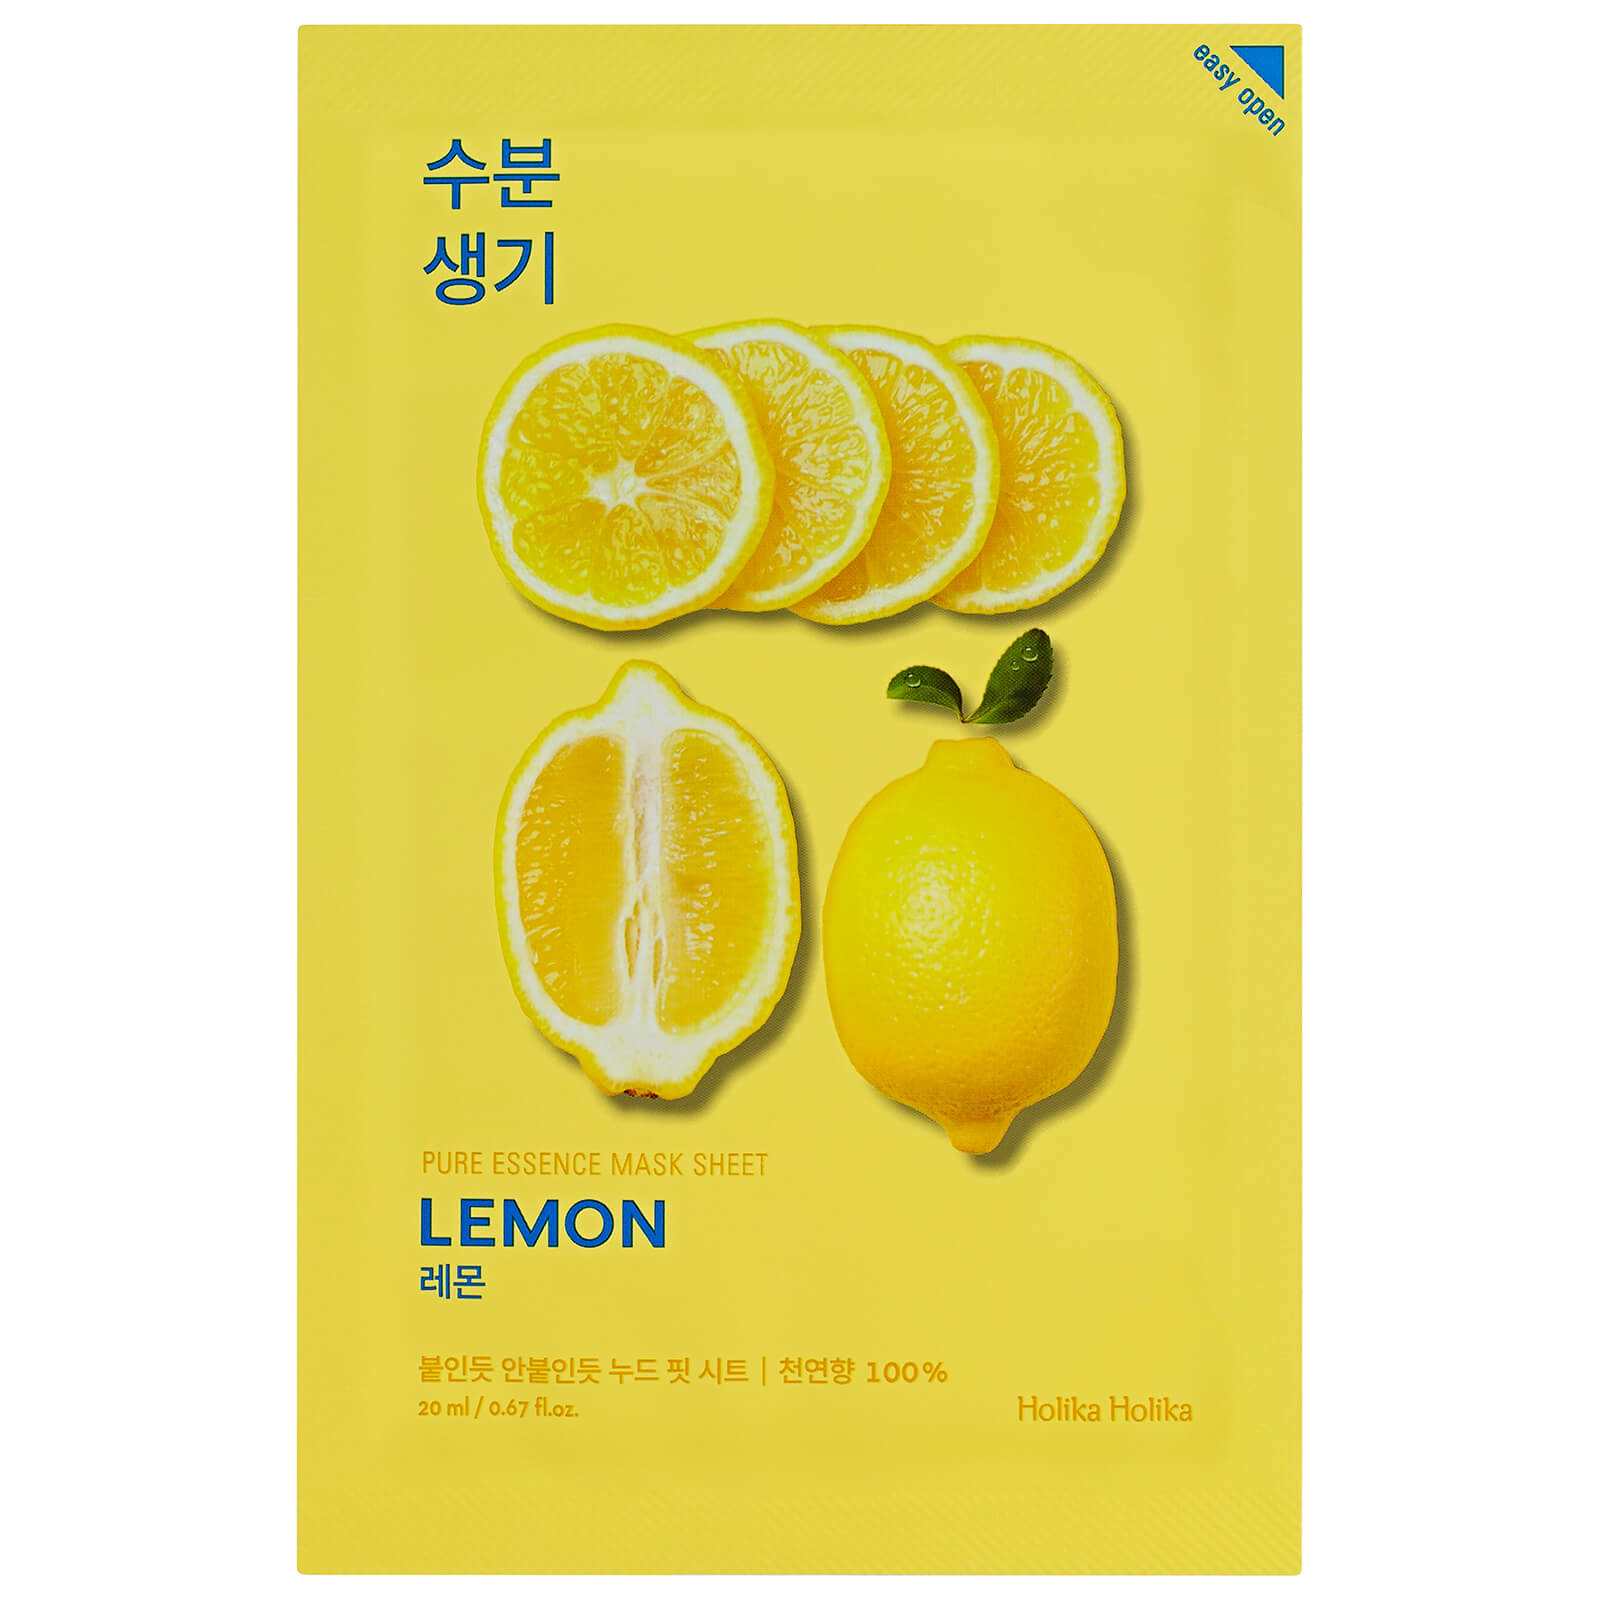 Image of Holika Holika Pure Essence Mask Sheet 20ml (Various Options) - Lemon